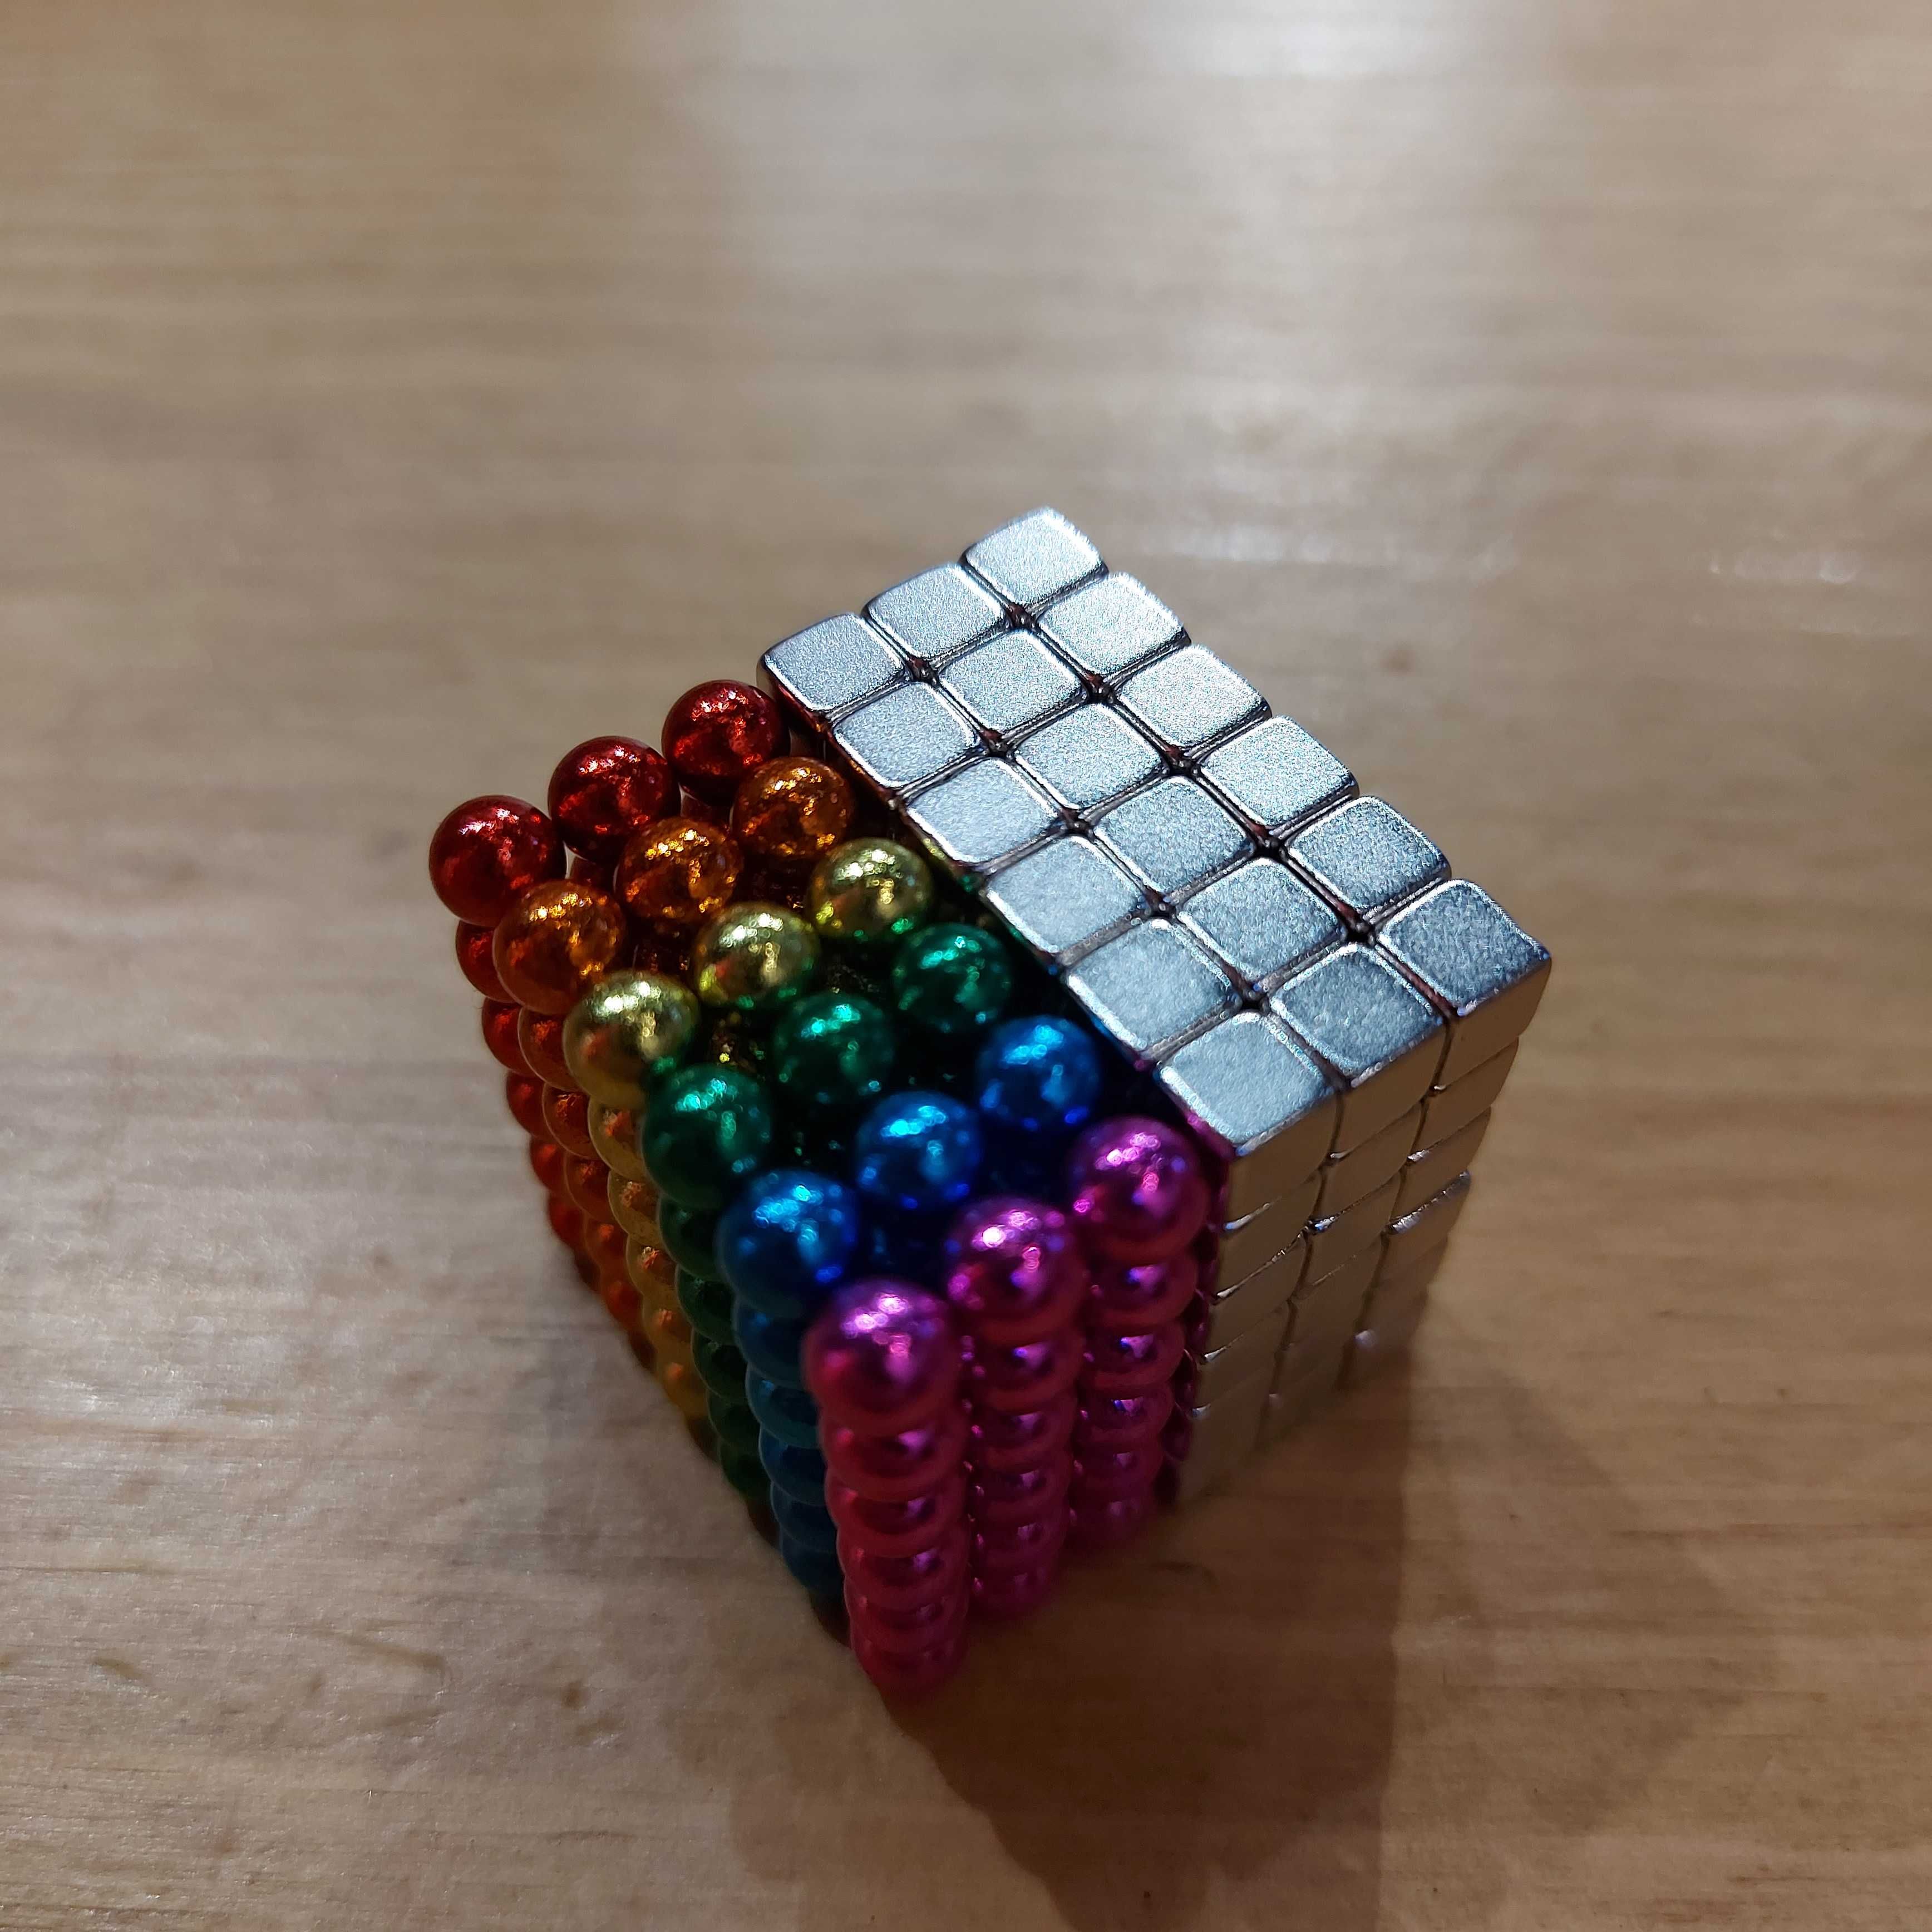 Магнитный Неокуб МИКС. Neocube. 108 кубиков + 108 шариков. Головоломка